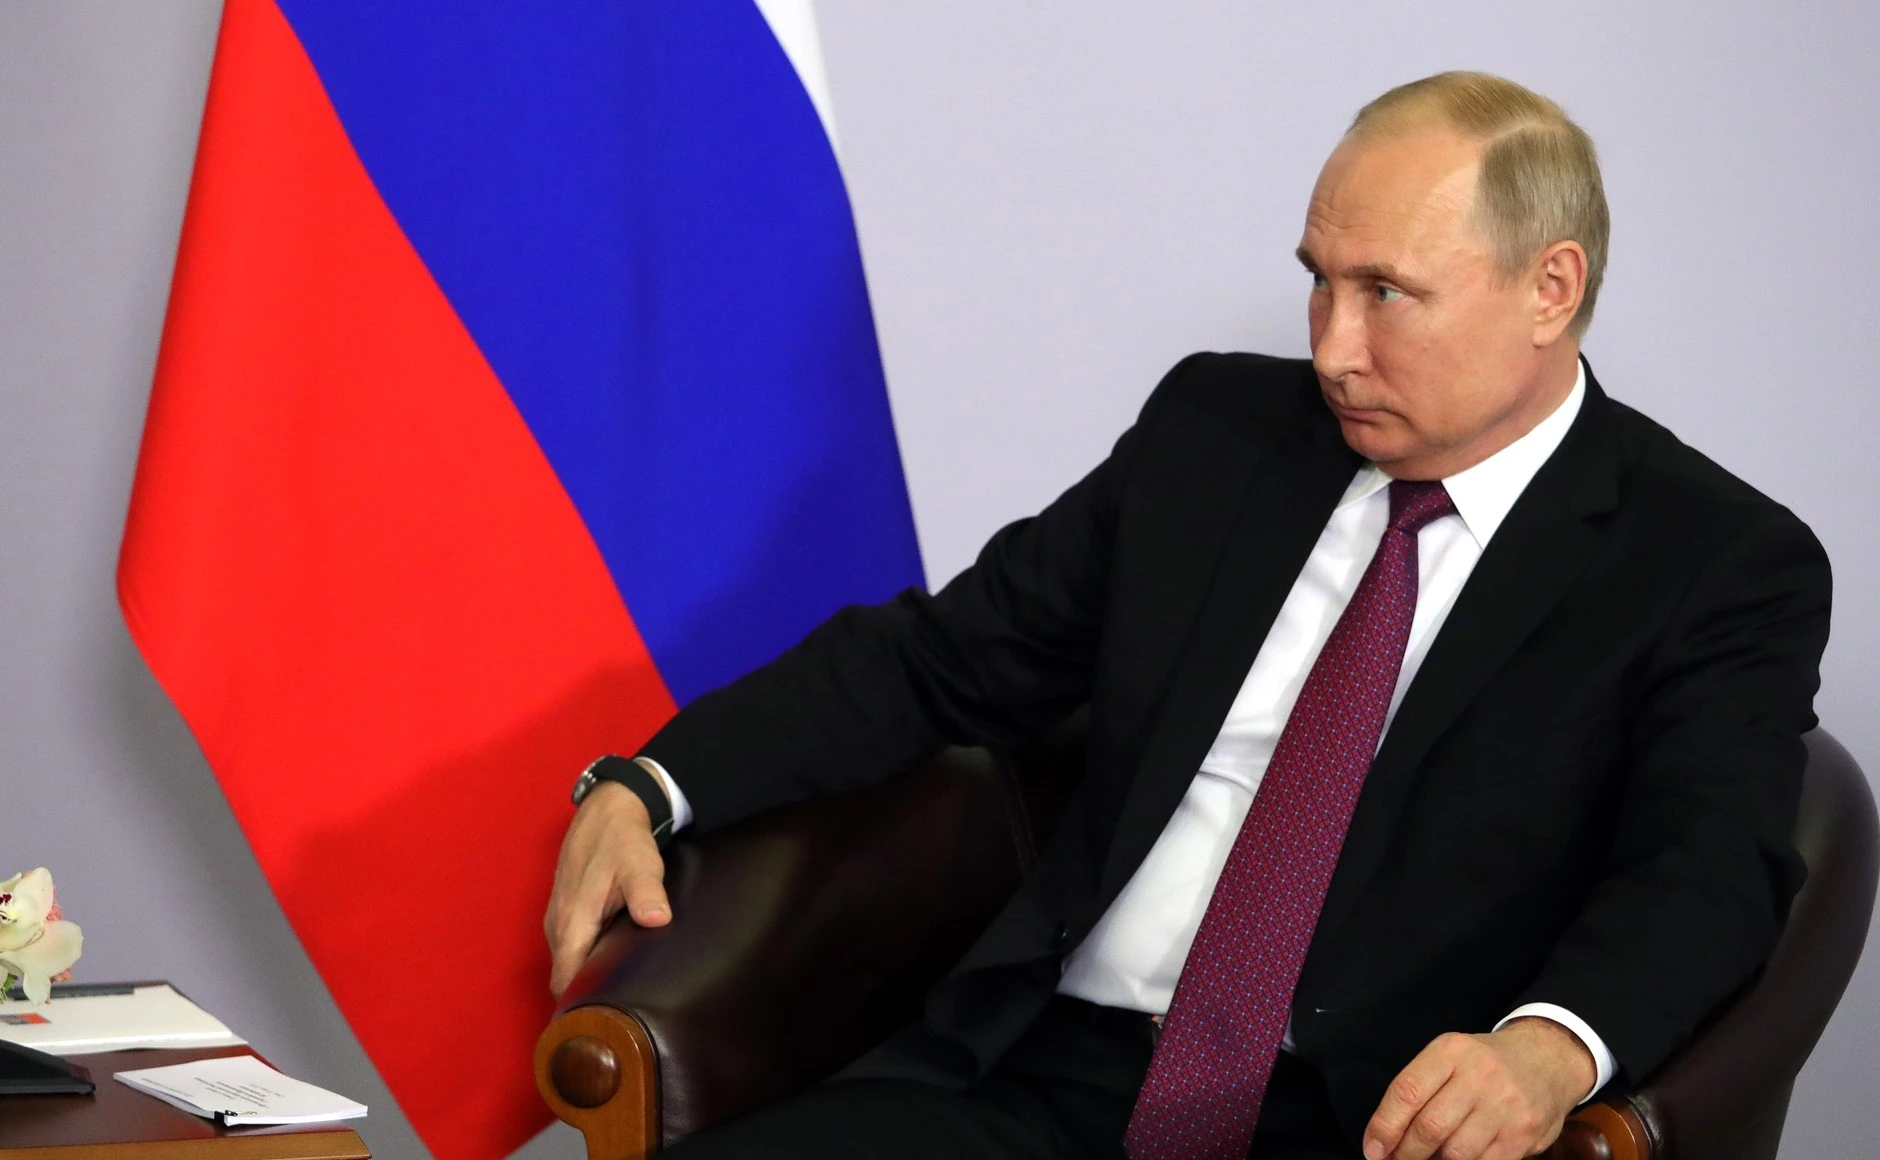 Putyin Oroszország bajban